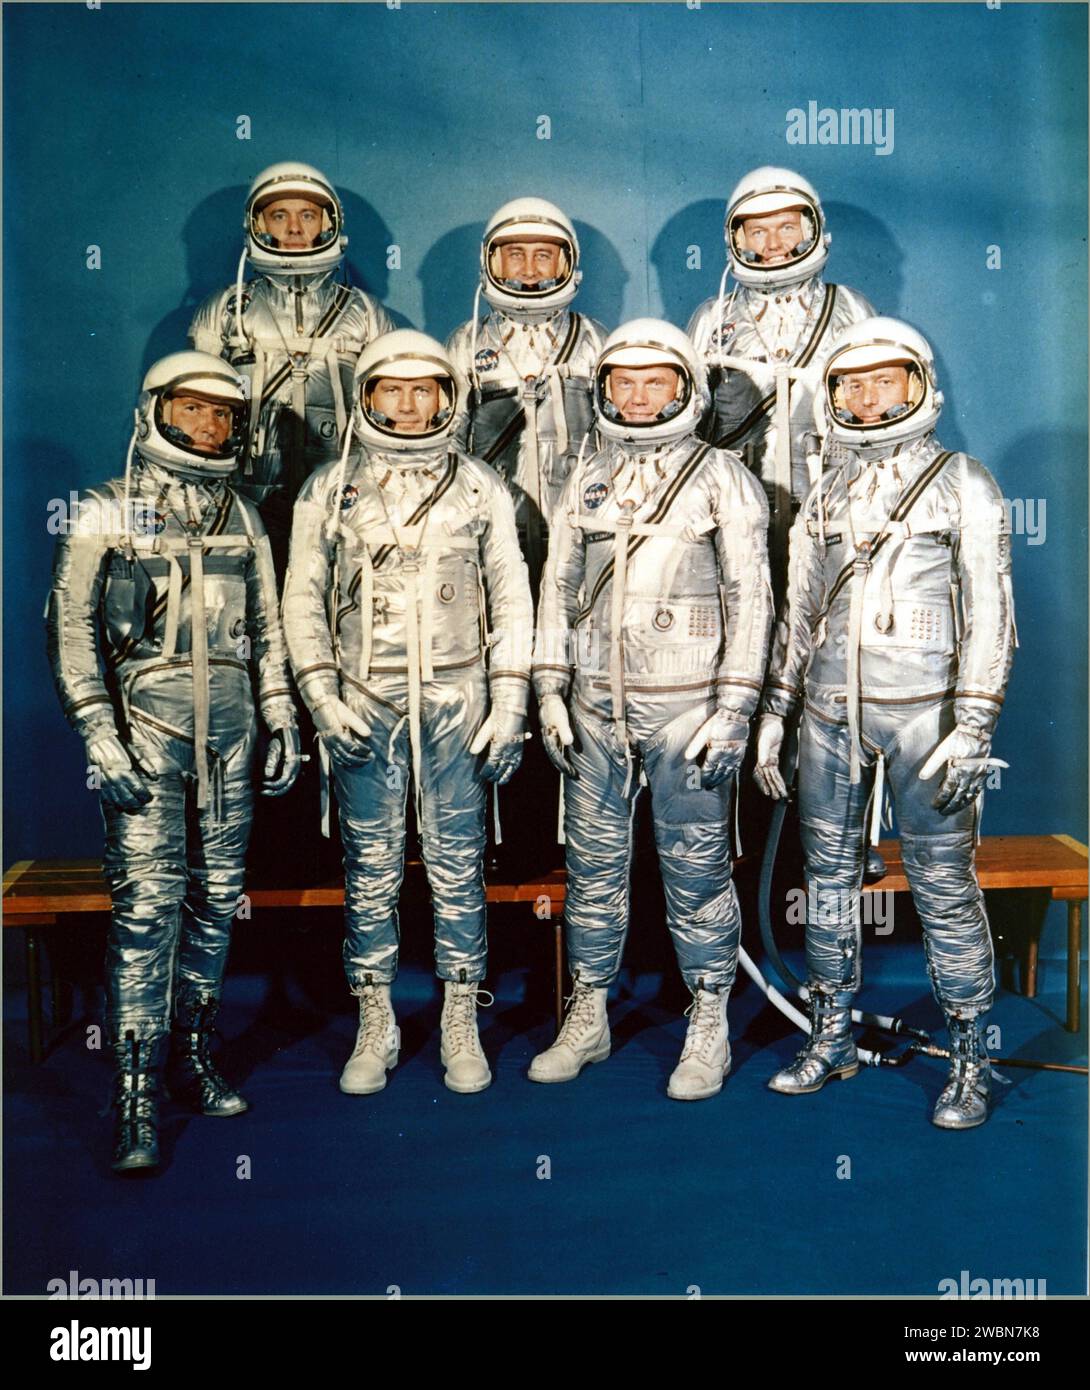 BEMANNTES RAUMSCHIFF-ZENTRUM, HOUSTON, TX. -- ERSTES ASTRONAUTENTEAM -- Projekt Mercury Astronauten, dessen Auswahl am 9. April 1959 bekanntgegeben wurde, nur sechs Monate nach der offiziellen Gründung der National Aeronautics and Space Administration am 1. Oktober 1958, beinhaltete die erste Reihe von links nach rechts, Walter H. Schirra Jr., Donald K. Slayton, John H. Glenn Jr. und Scott Carpenter hinten, Alan B. Shepard Jr., Virgil I. Gus Grissom und L. Gordon Cooper. Stockfoto